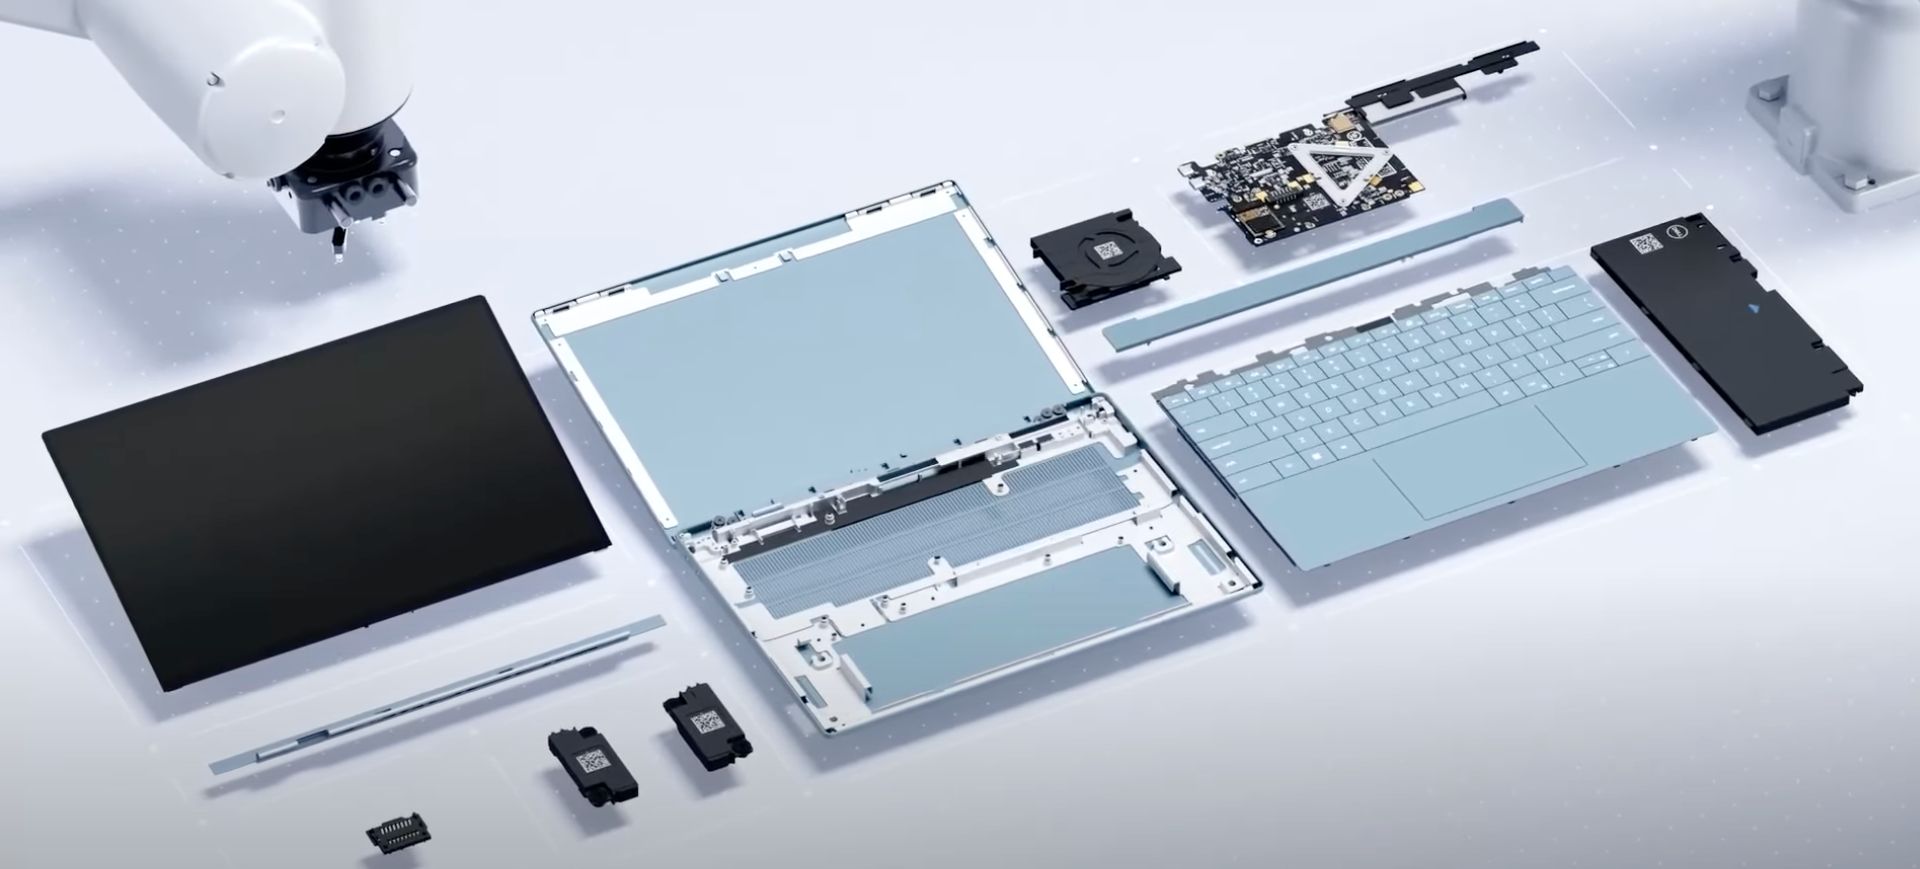 Imagem mostra peças de um notebook da Dell desmontado, para demonstrar o conceito de módulos do Concept Luna